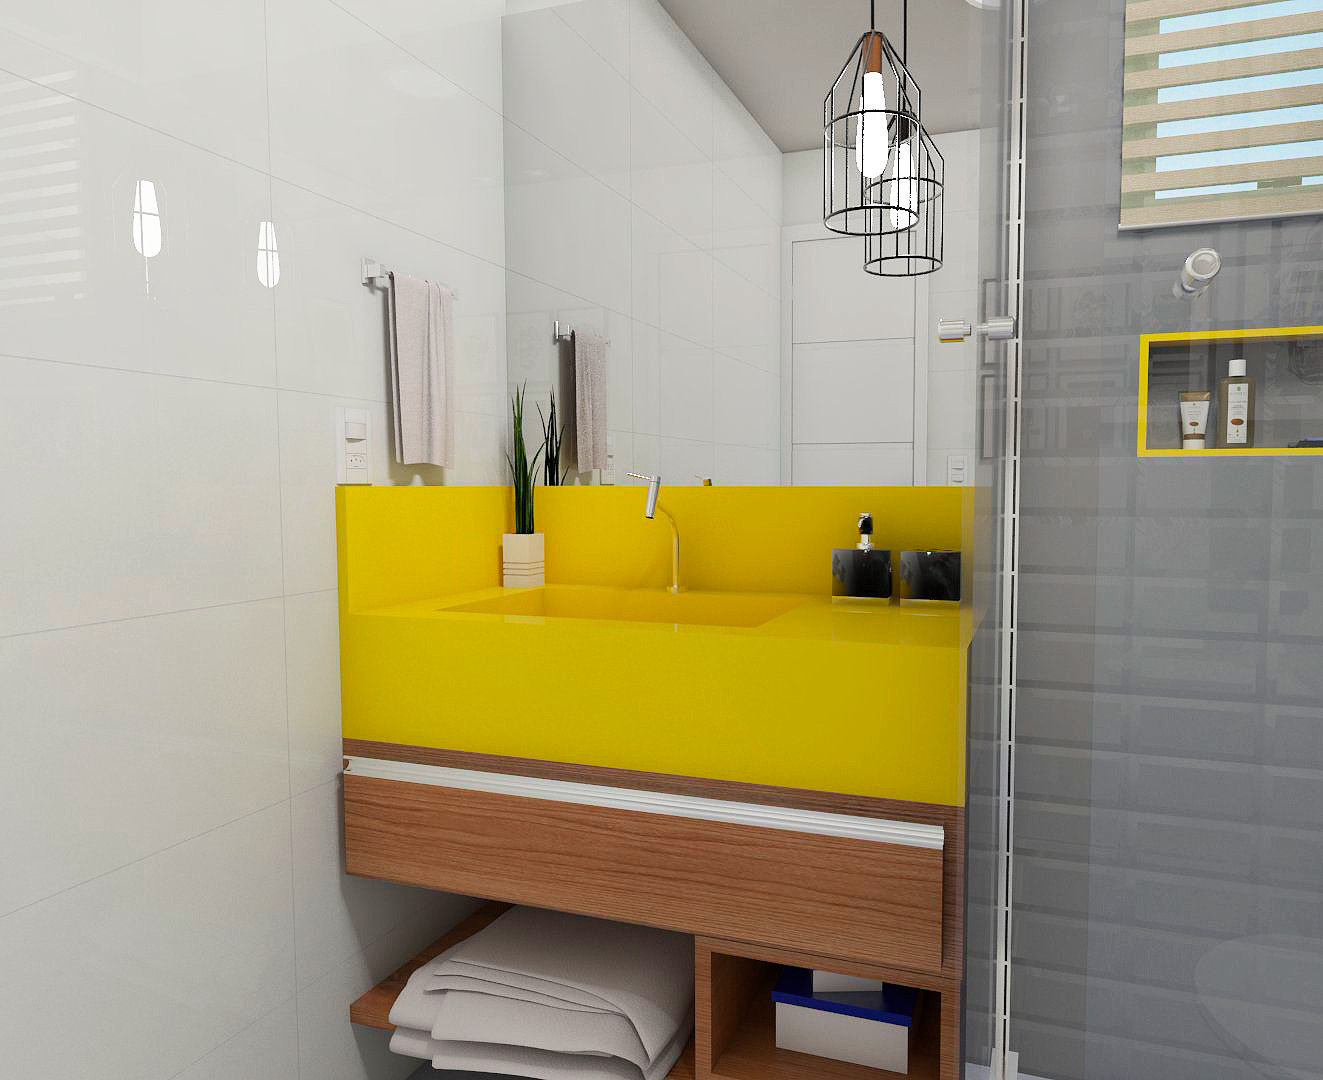 Banheiro industrial para um jovem solteiro, Jéssika Martins Design de Interiores Jéssika Martins Design de Interiores Bathroom